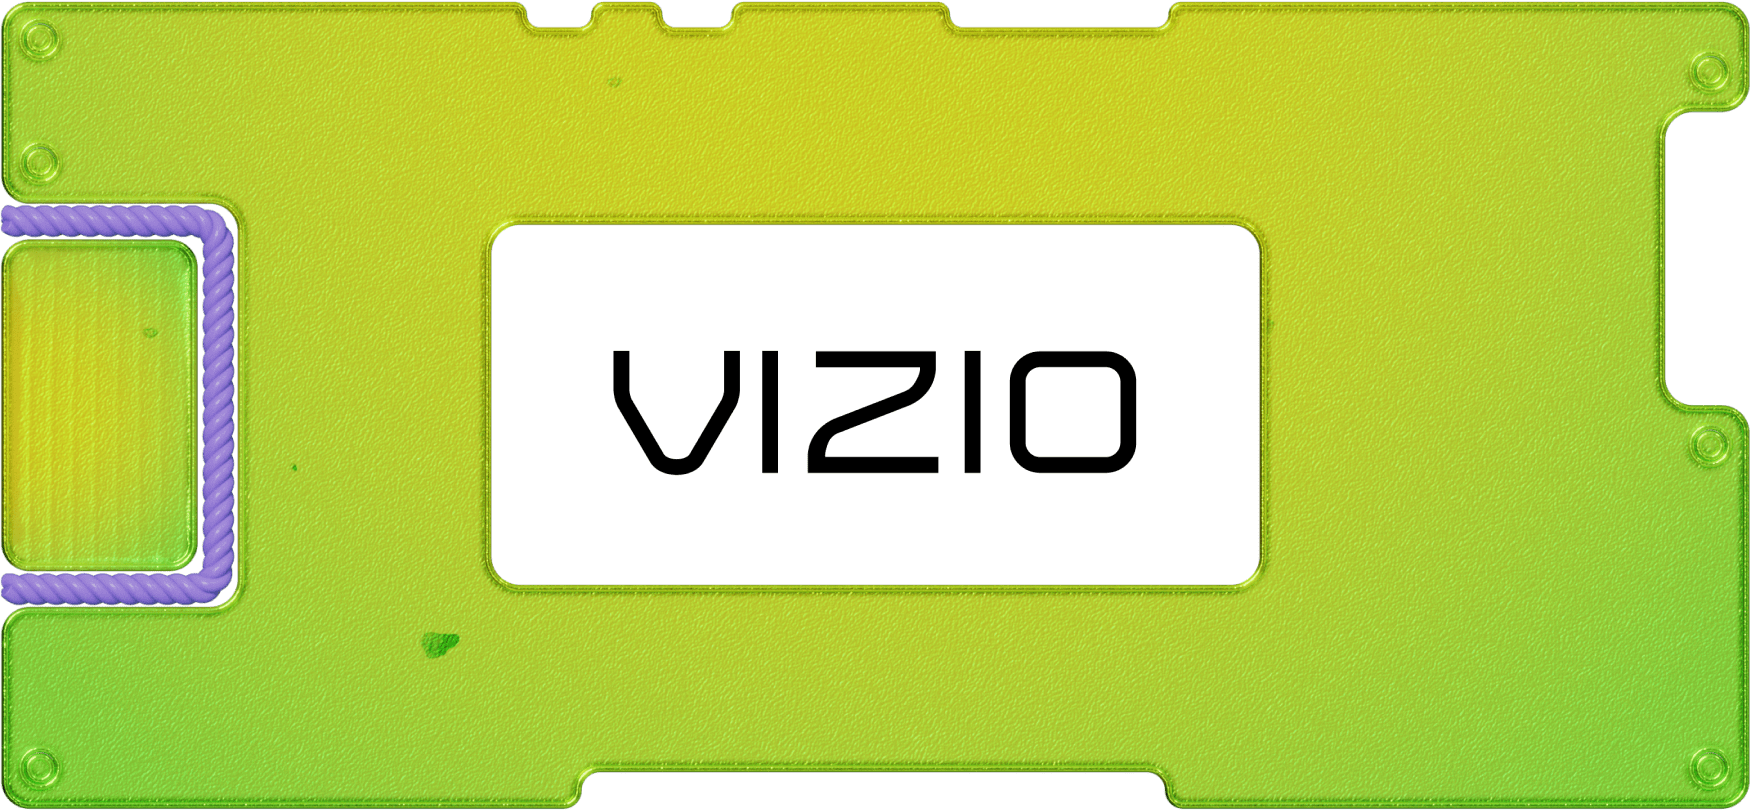 Инвестидея: Vizio, потому что больше стриминга богу стриминга